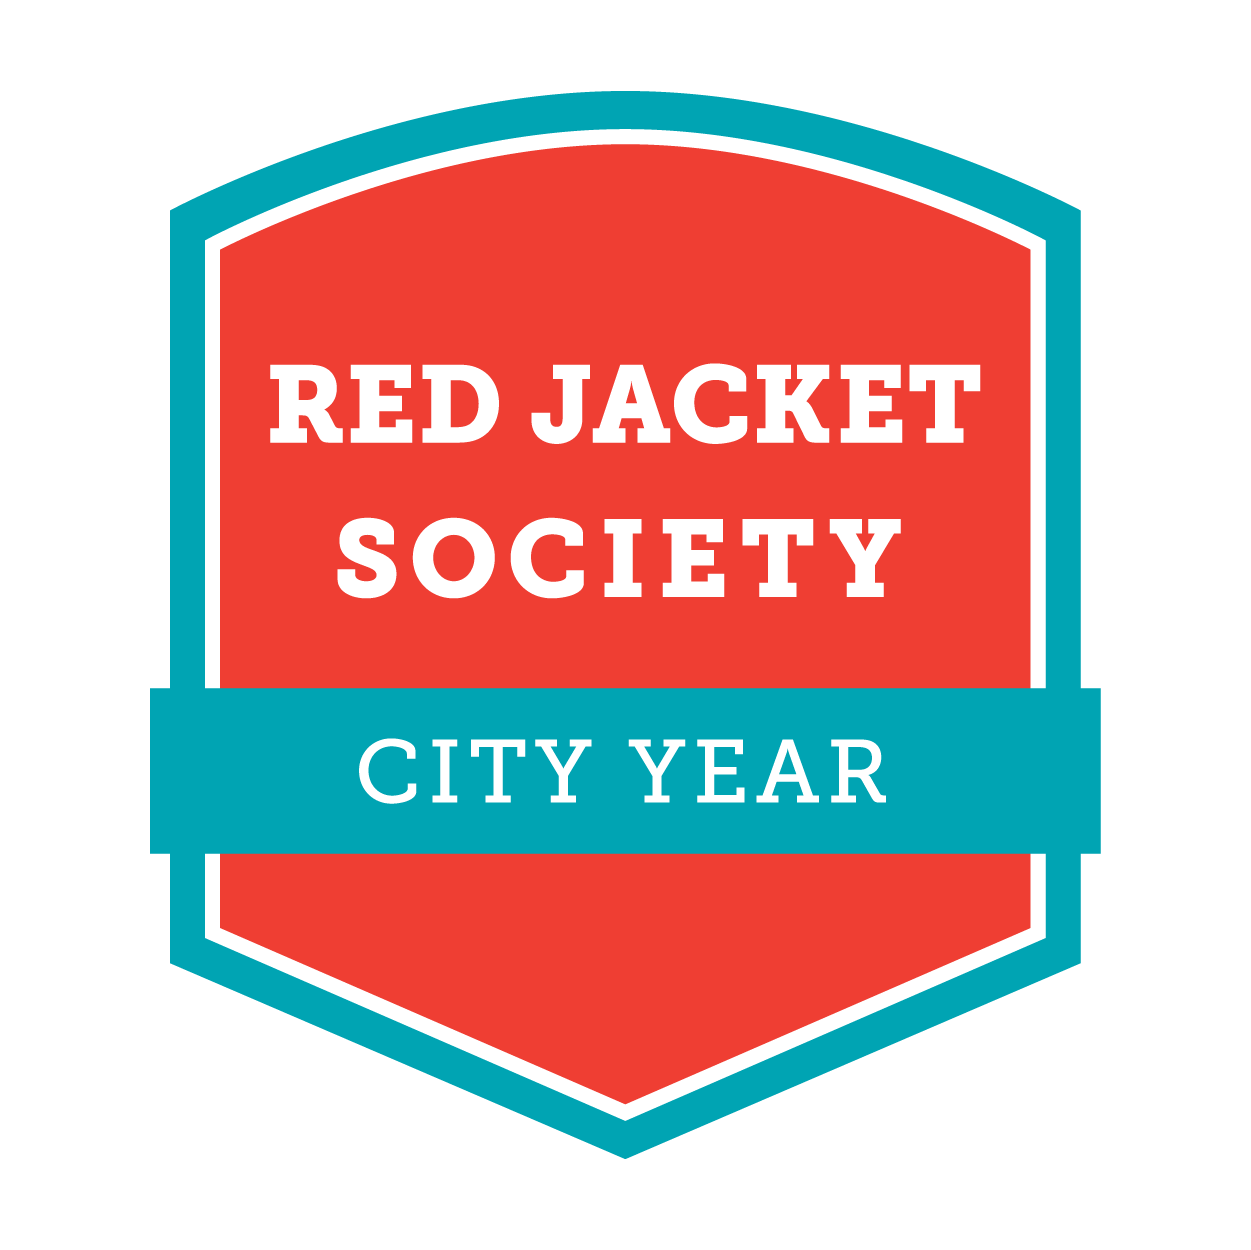 Red Jacket Society City Year logo